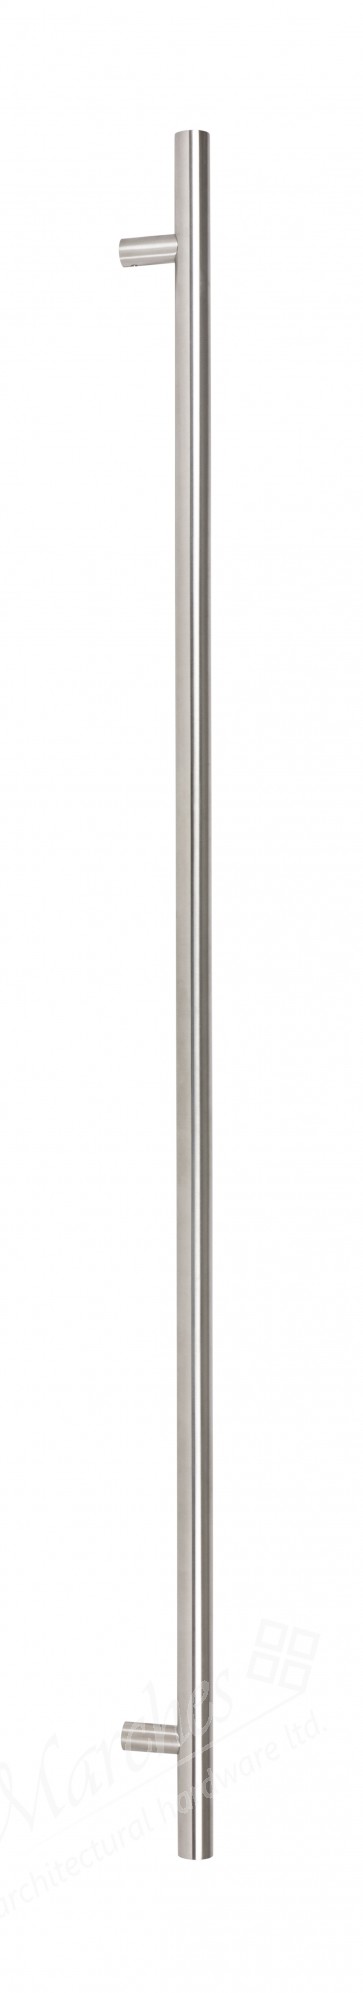 1.5m T Bar Handle Bolt Fix 32mm Ø - Satin SS (316)